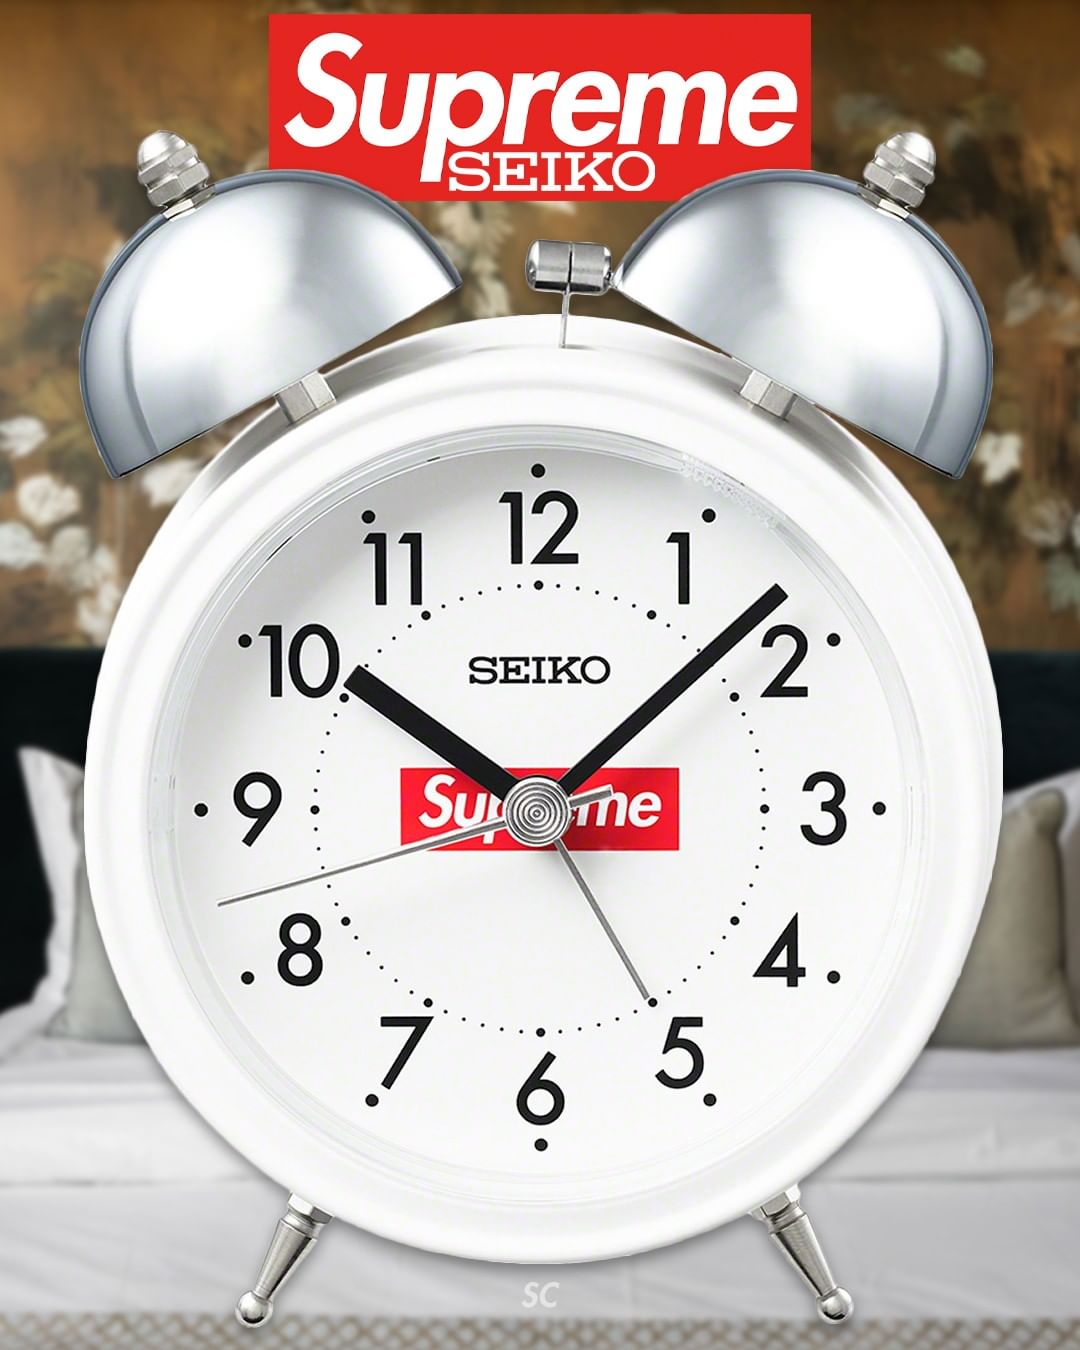 Supreme Seiko Alarm Clock White 22FW week9 シュプリーム セイコー